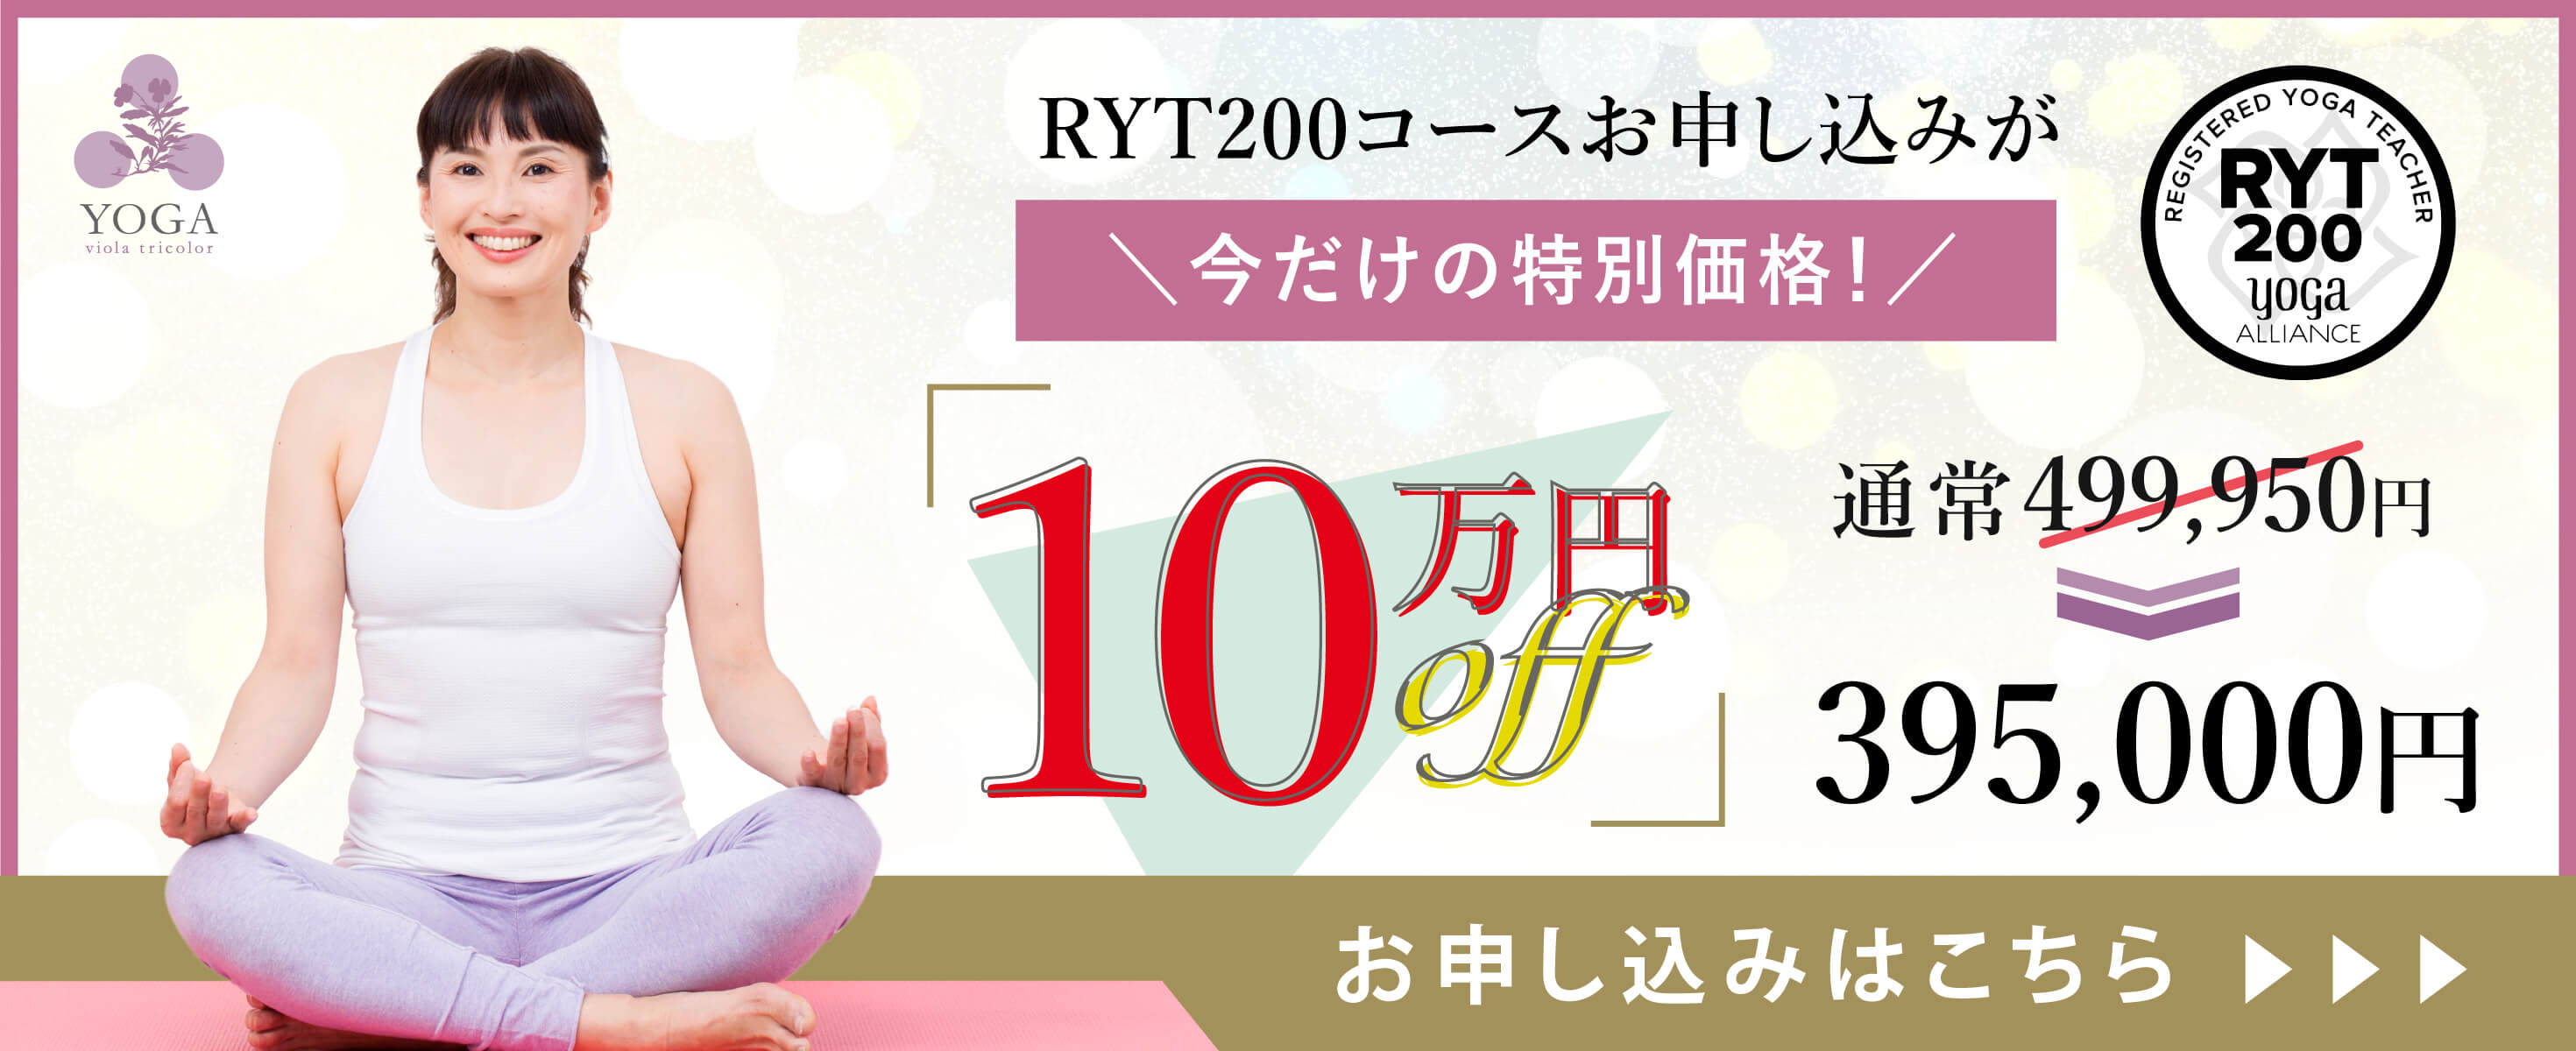 RYT200コースお申し込みが今だけの10万円OFF特別価格!